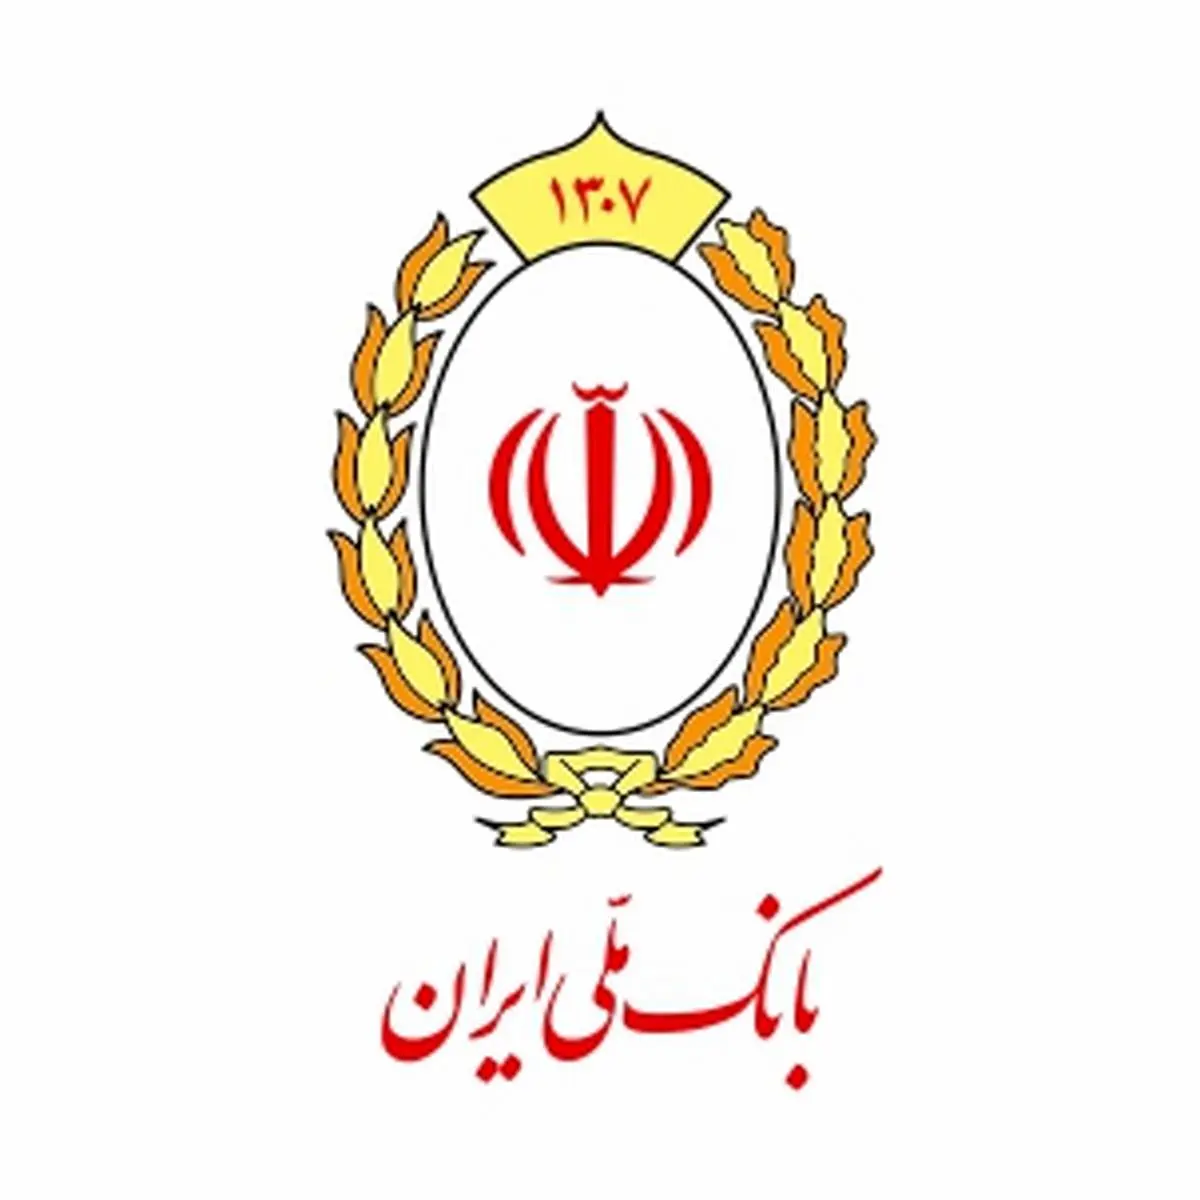 فراخوان بانک ملی ایران به مالکان واحدهای تولیدی در جریان تملک یا تملک شده
